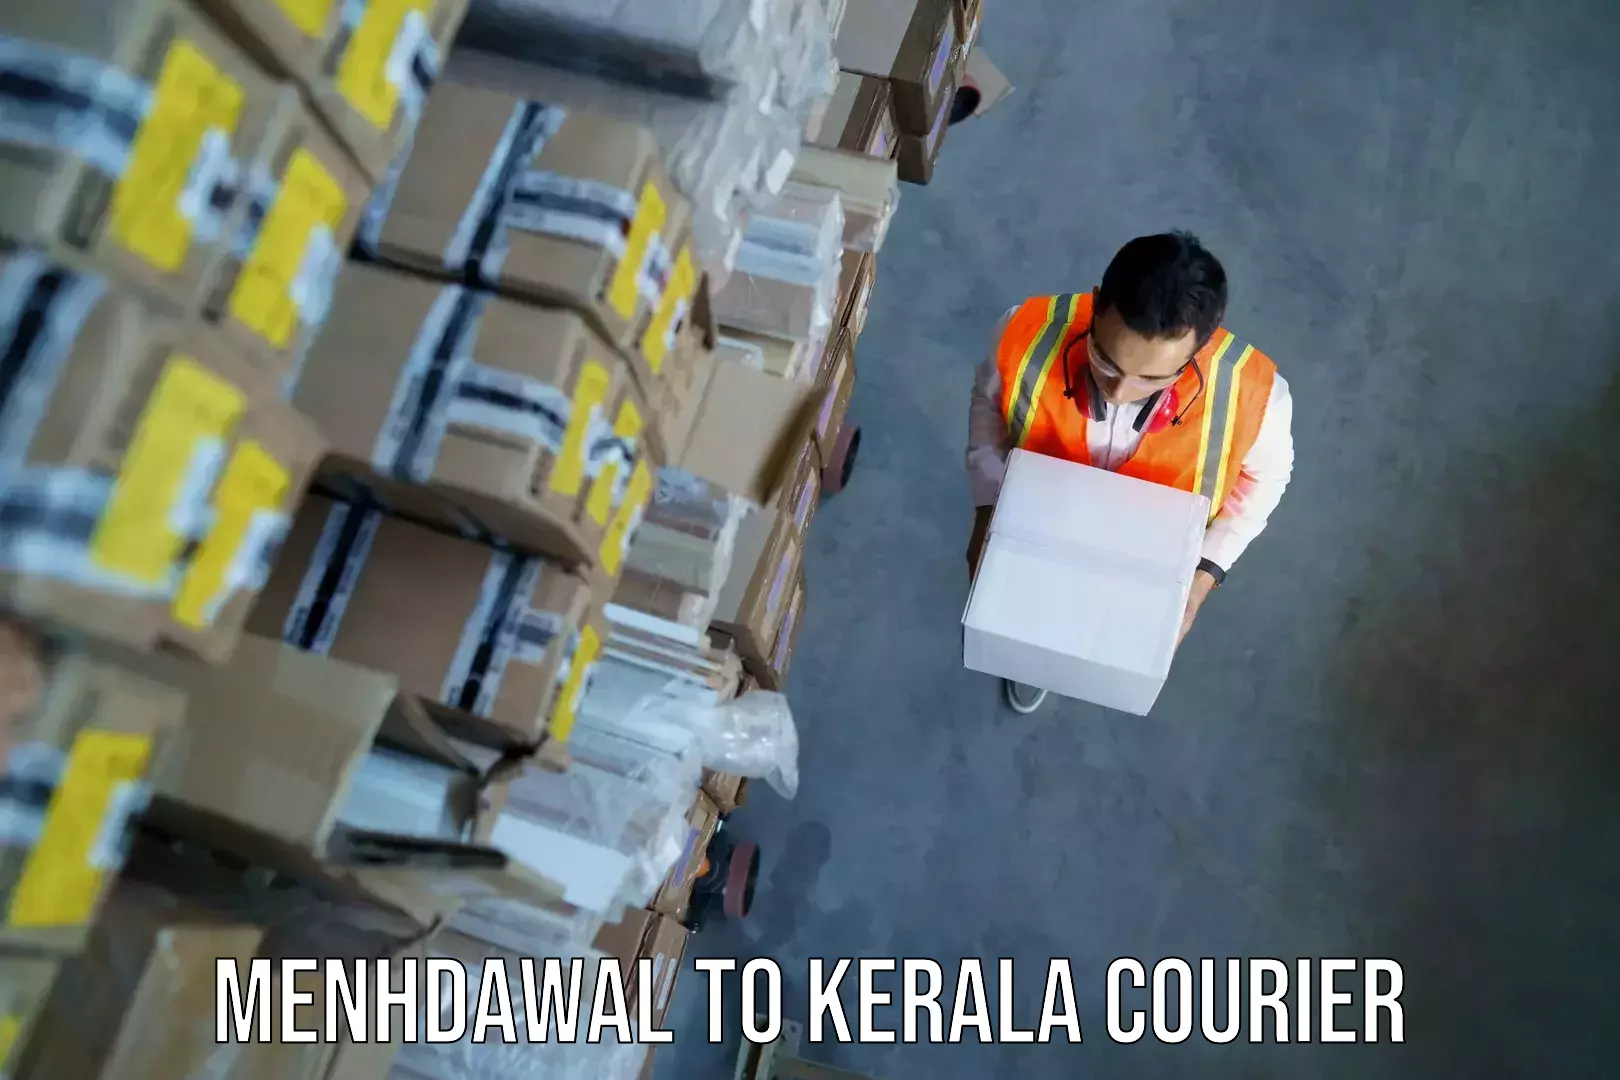 Baggage shipping experts Menhdawal to Kerala